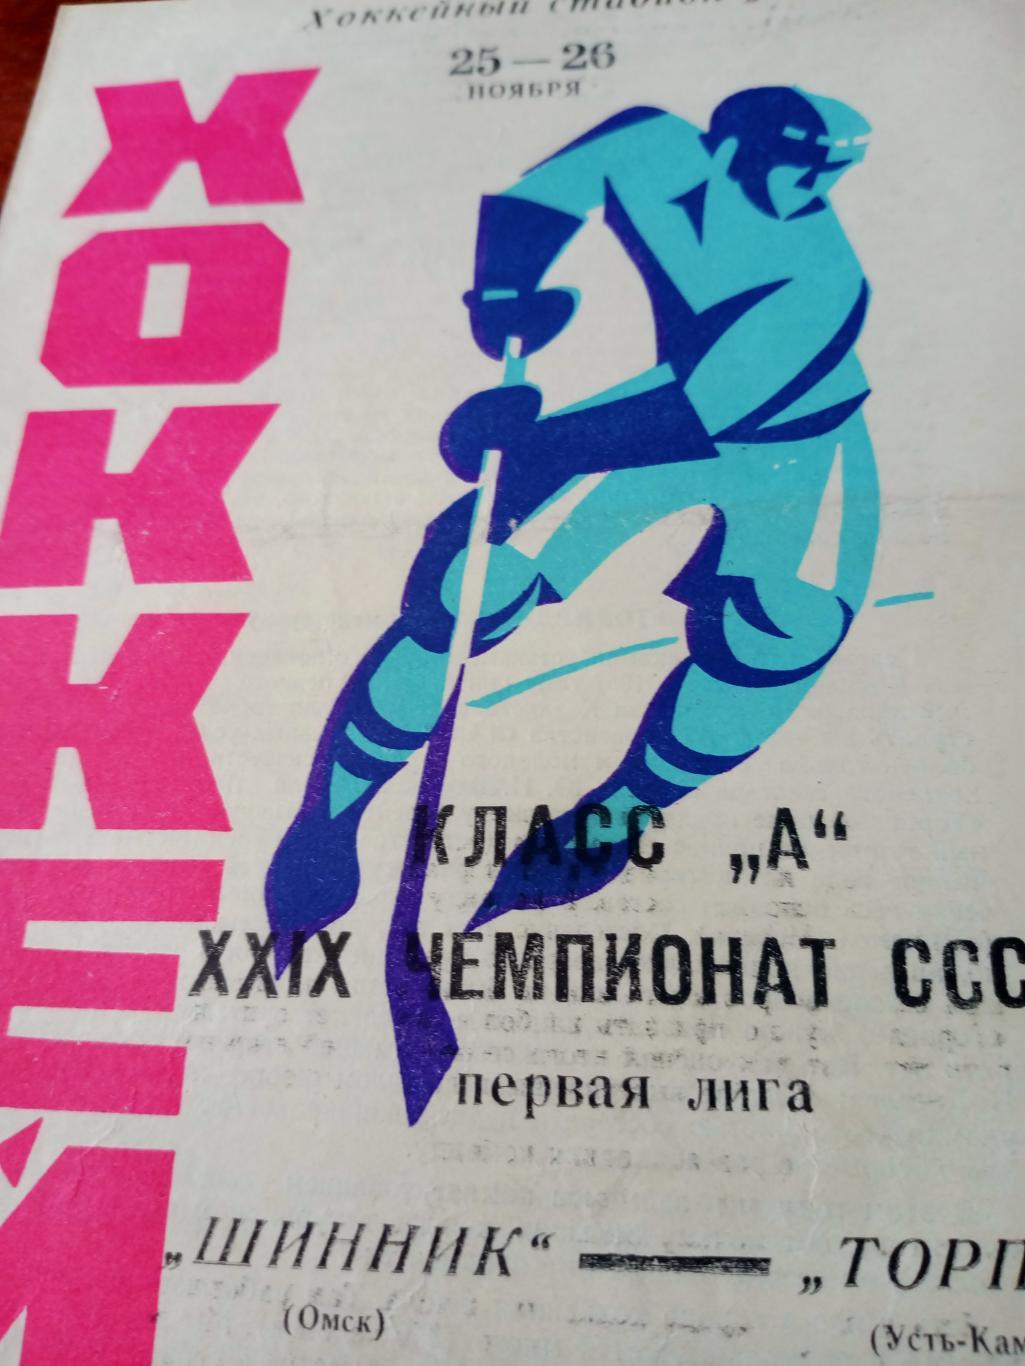 Шинник Омск - Торпедо Усть-Каменогорск. 25 и 26 ноября 1974 год